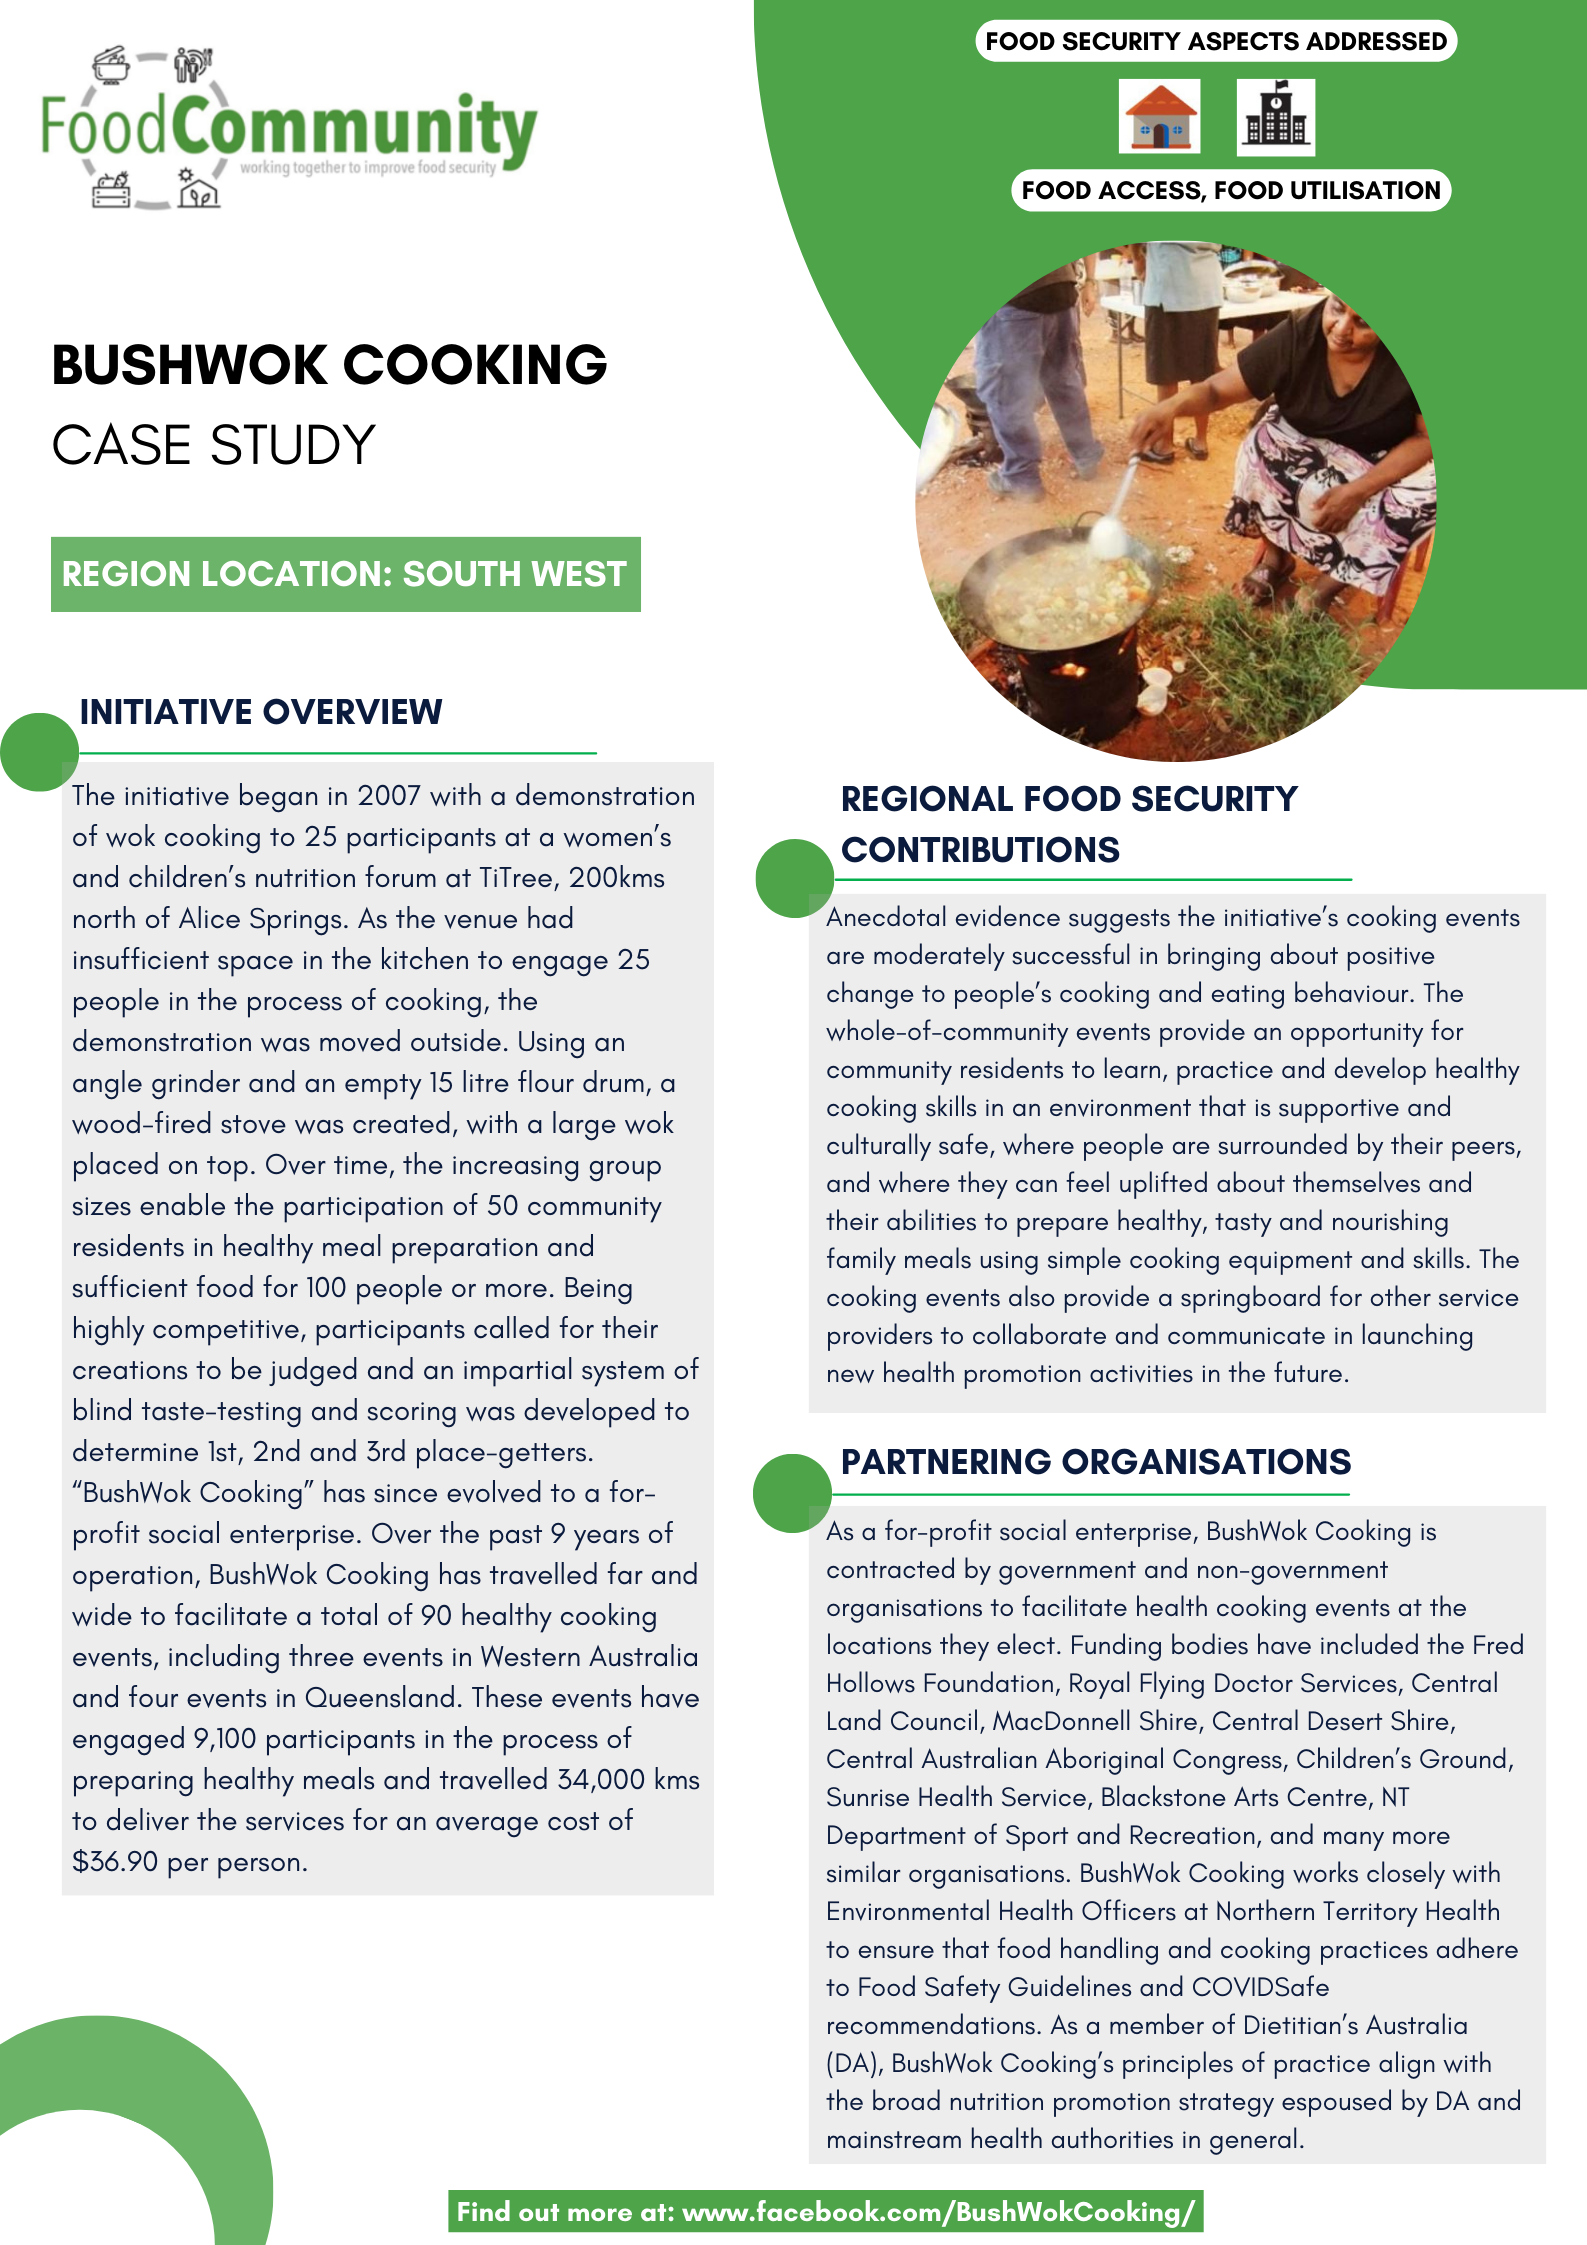 BushWok Cooking